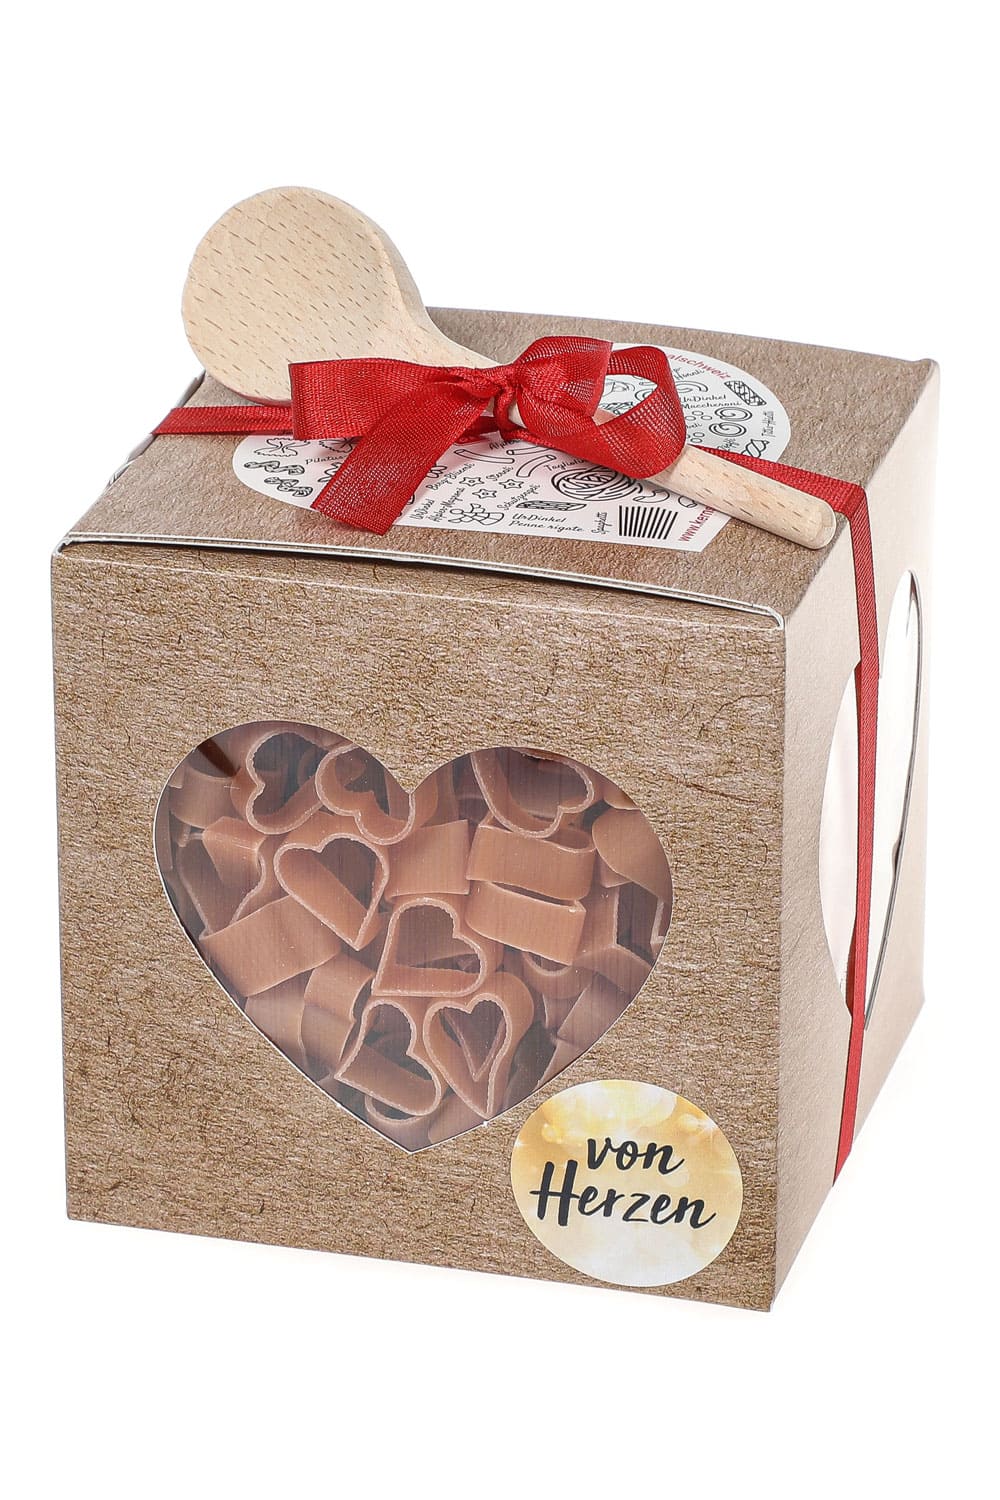 Pasta Geschenkbox als Geschenk Nudeln. Mit roter Schlaufe und Holz Kochloeffel. Herz Teigwaren in schoener Verpackung. Von Herzen